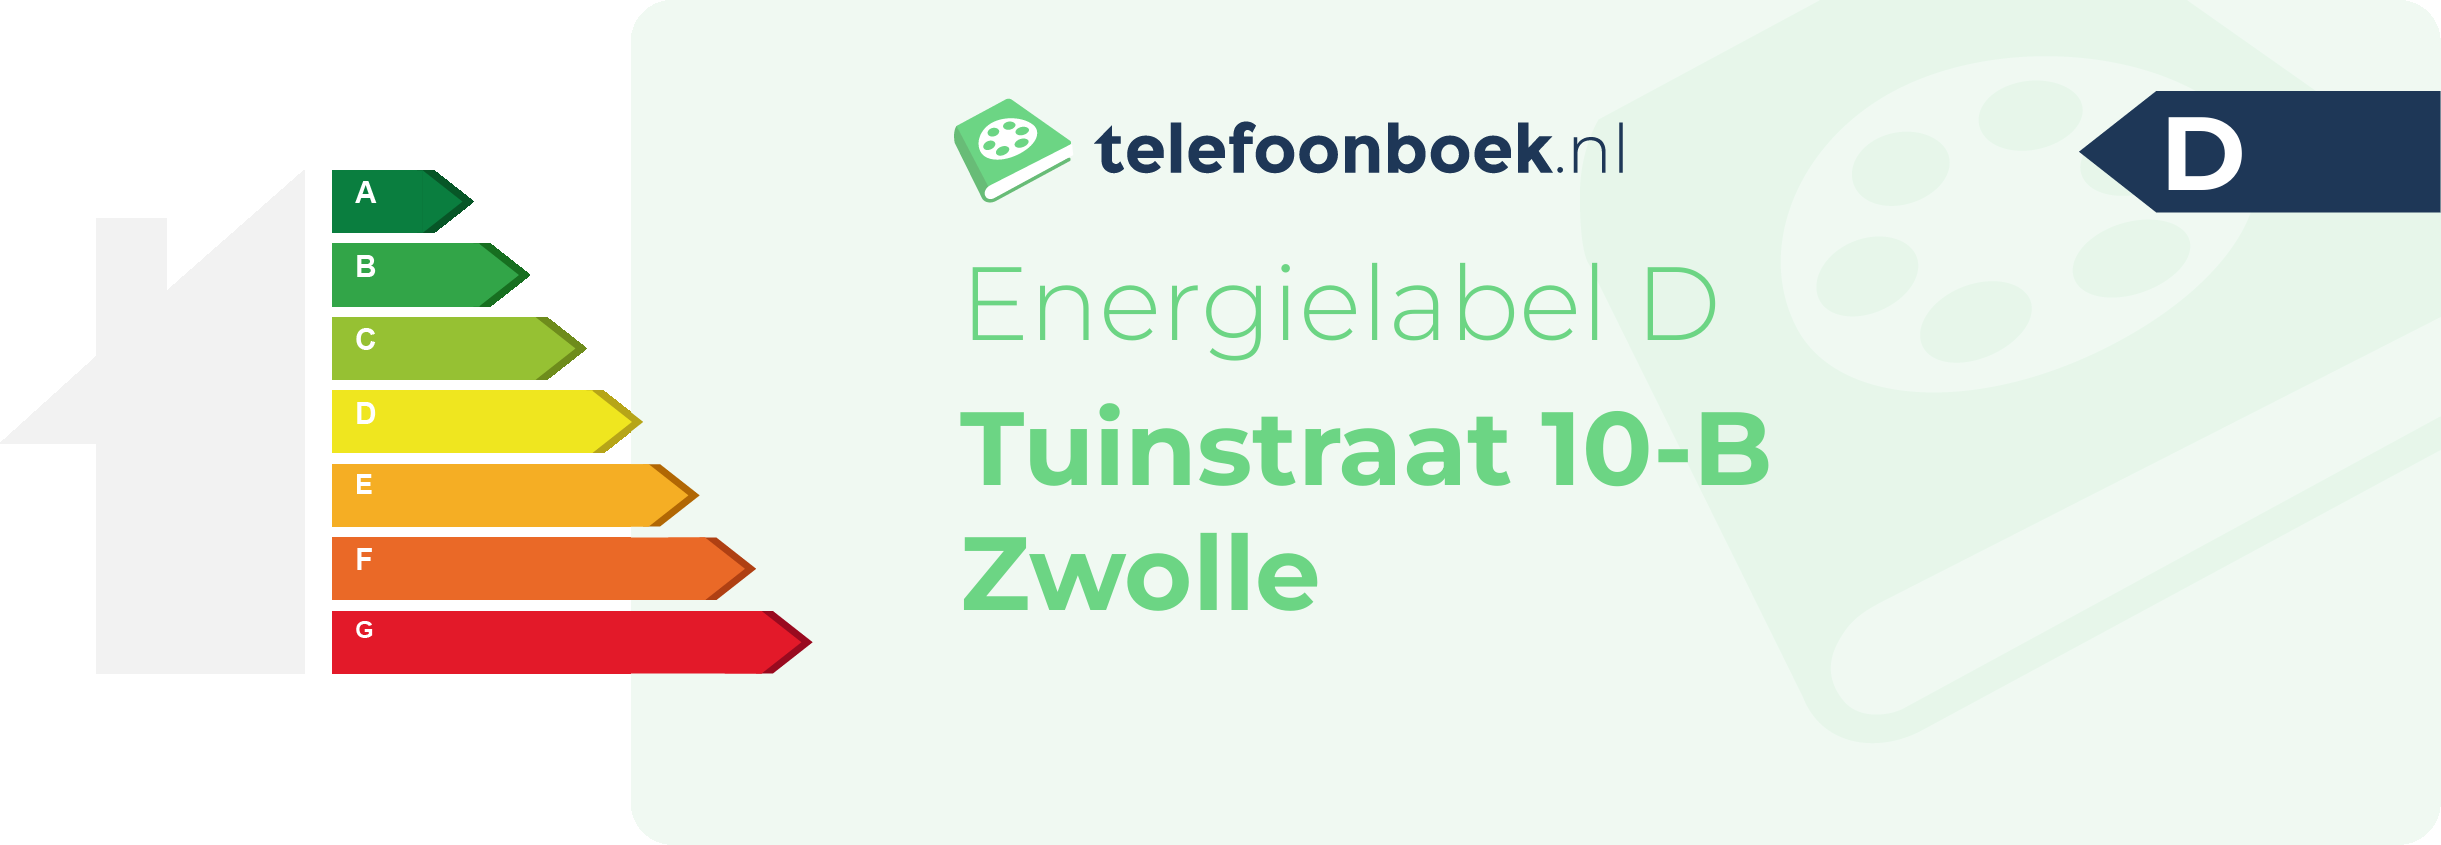 Energielabel Tuinstraat 10-B Zwolle